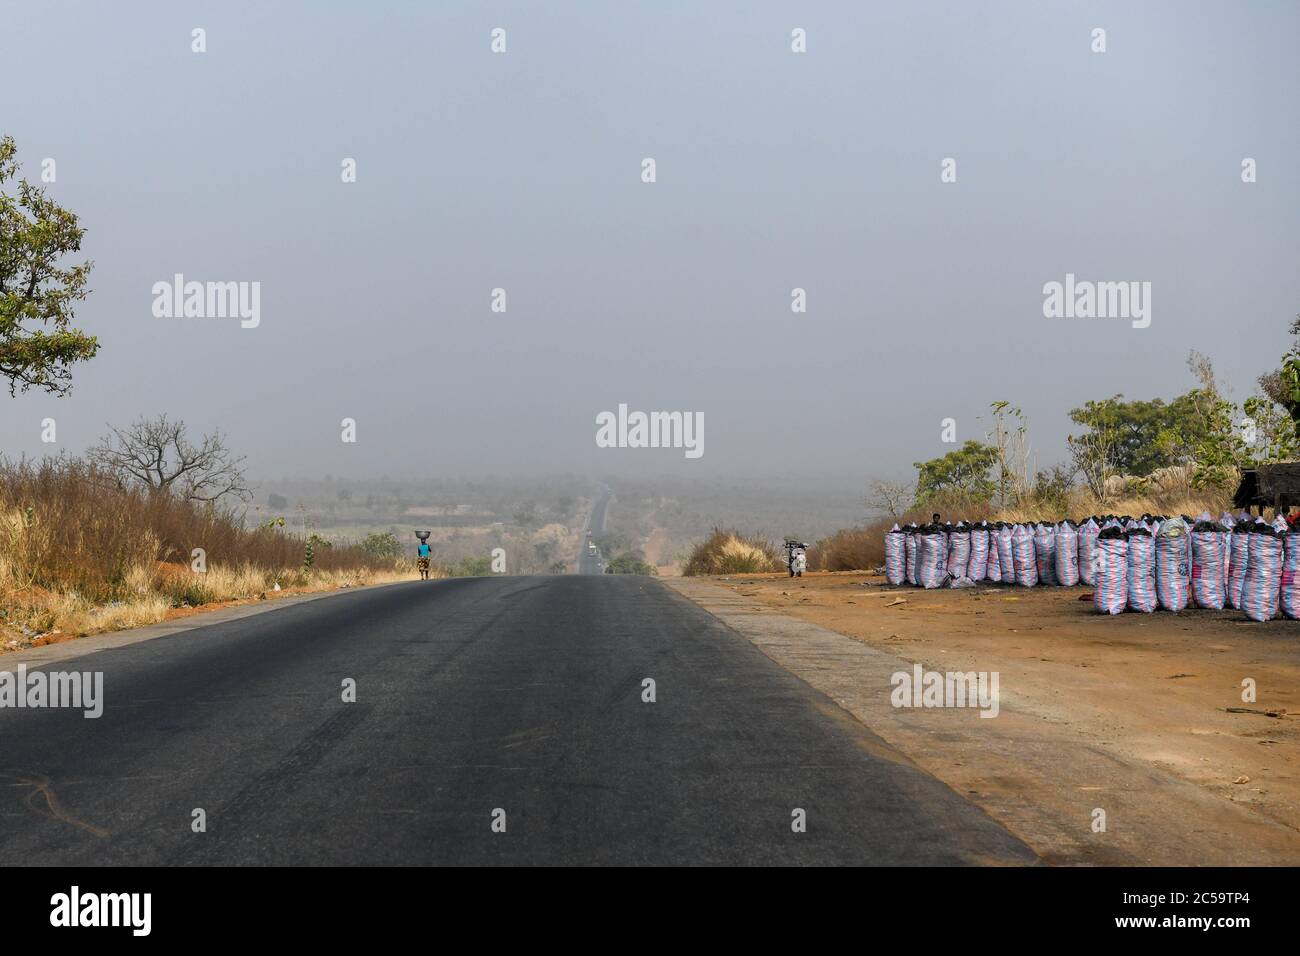 Africa, Africa occidentale, Benin, Natitinqou. Una donna cammina con un secchio sulla testa. Sulla sinistra, un commerciante di carbone sul lato della strada. Foto Stock